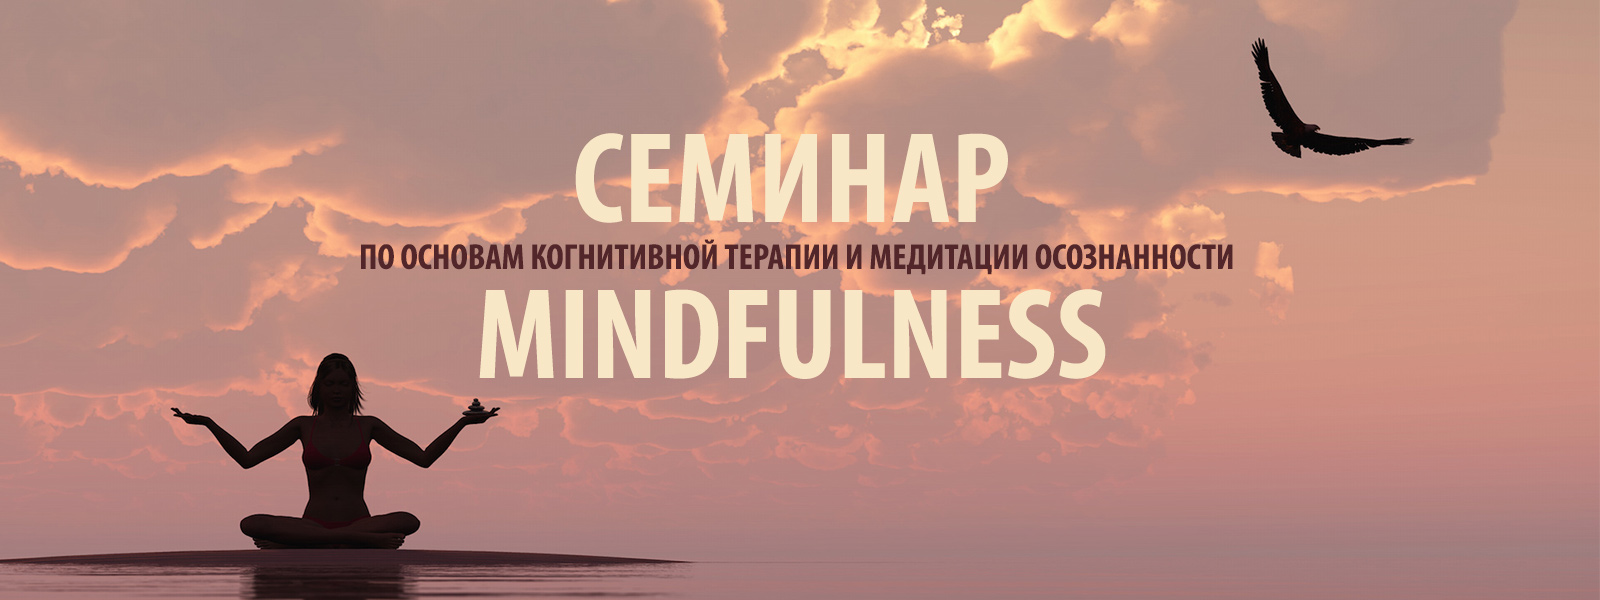 Узнайте много нового и интересного о популярном во всем мире направлении Mindfulness!